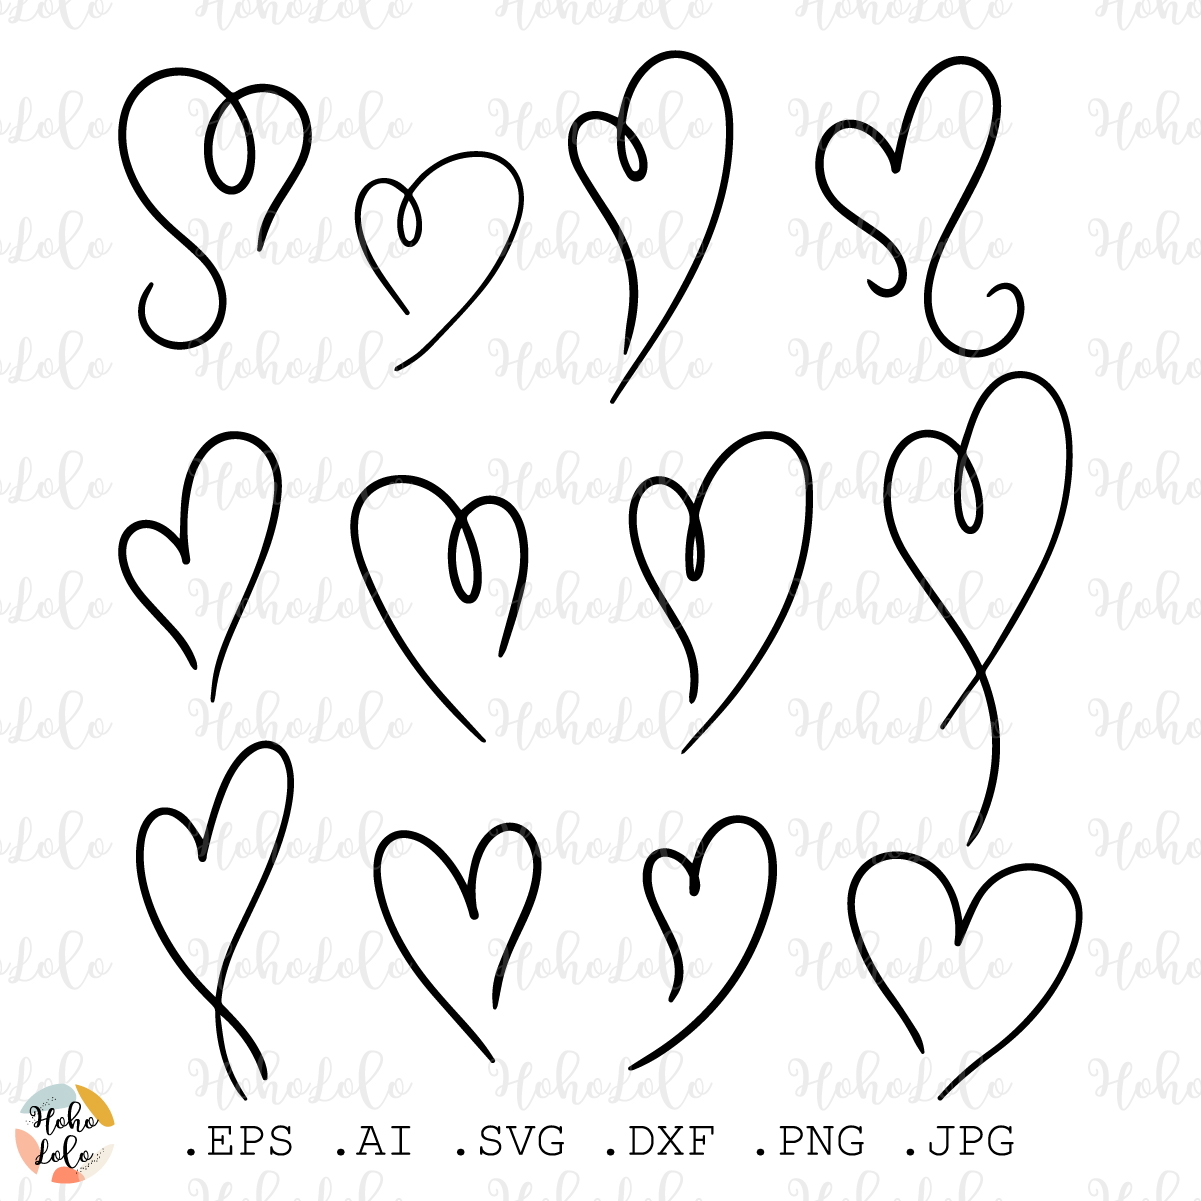 Sketched Hearts Svg, Hearts Svg, Love Heart Svg, Heart Outline Svg